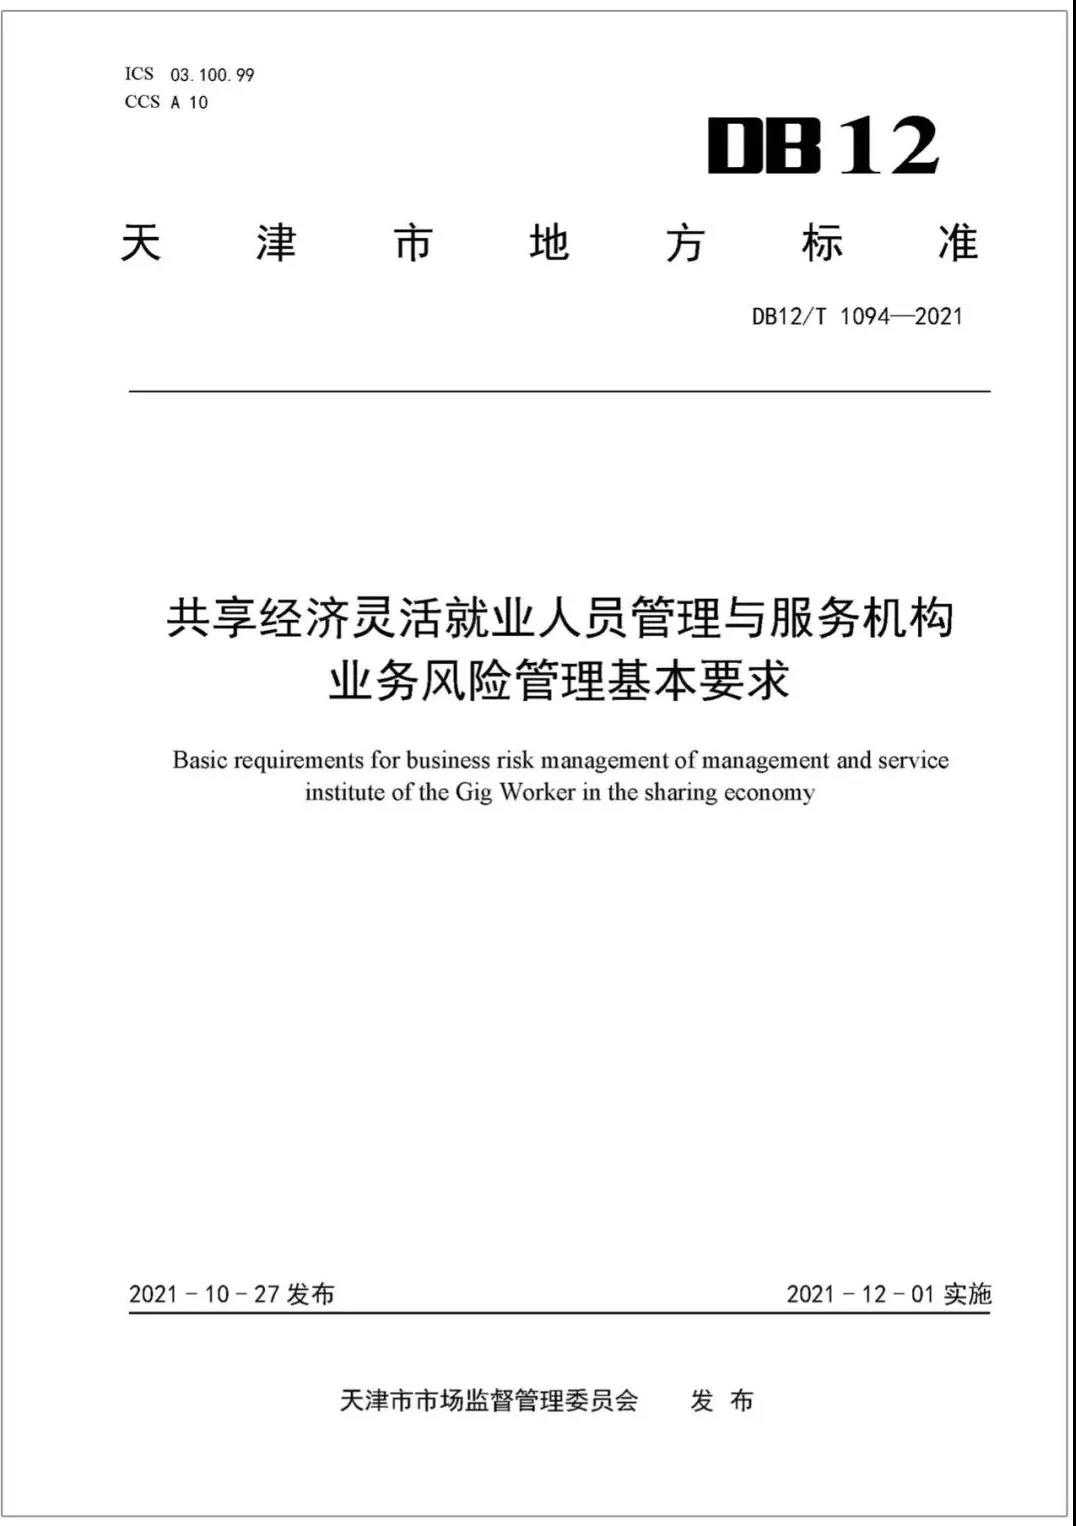 天津市又发布一项灵活用工行业标准